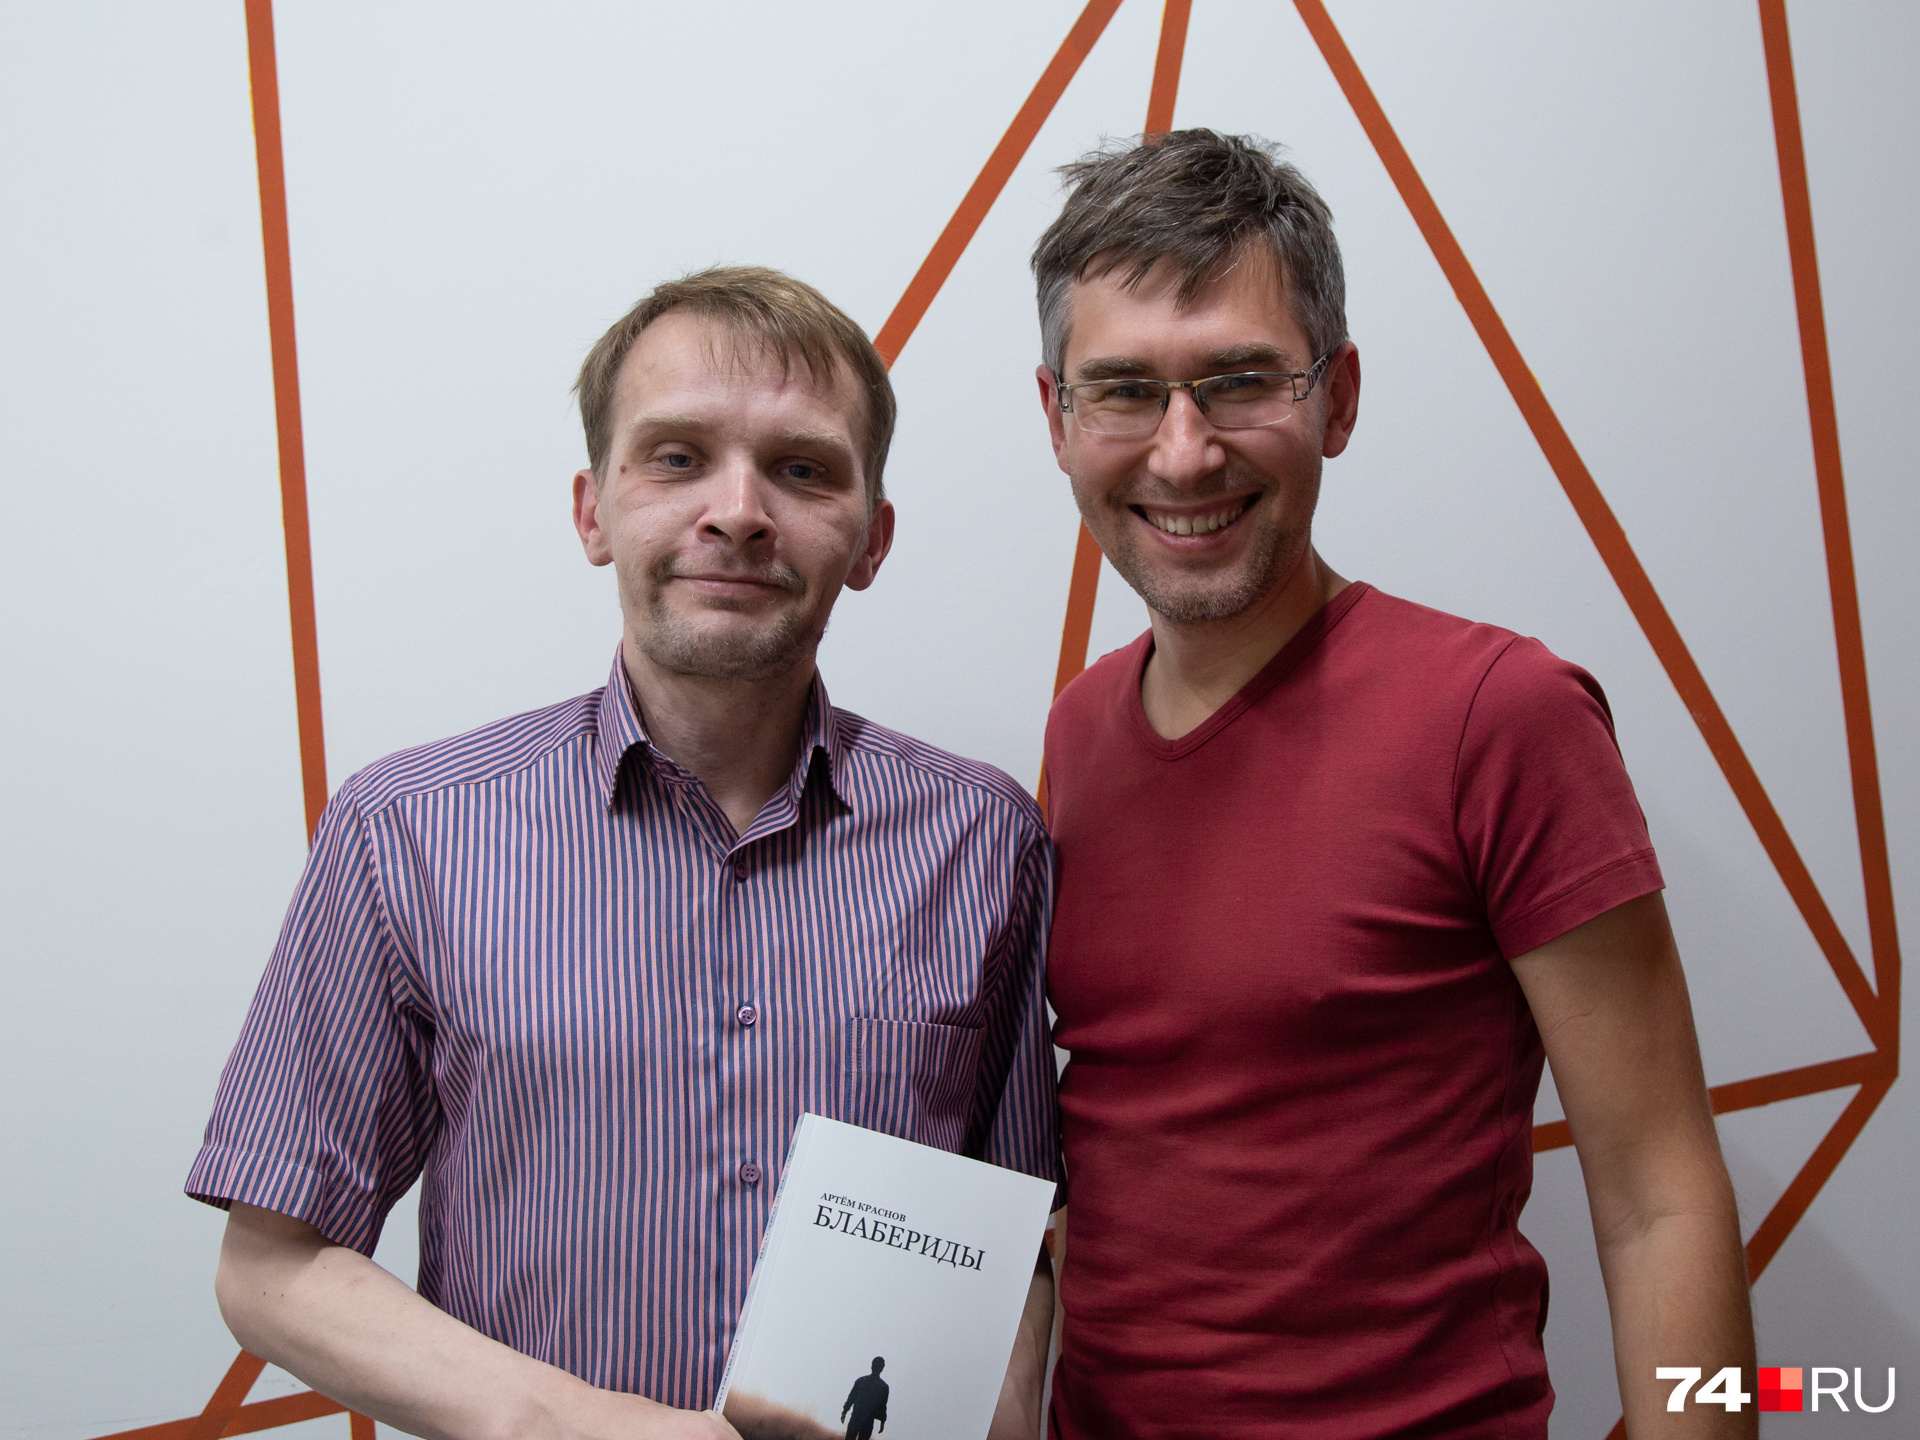 Артем Краснов подарил Алексею Сальникову свою книгу «Блабериды»